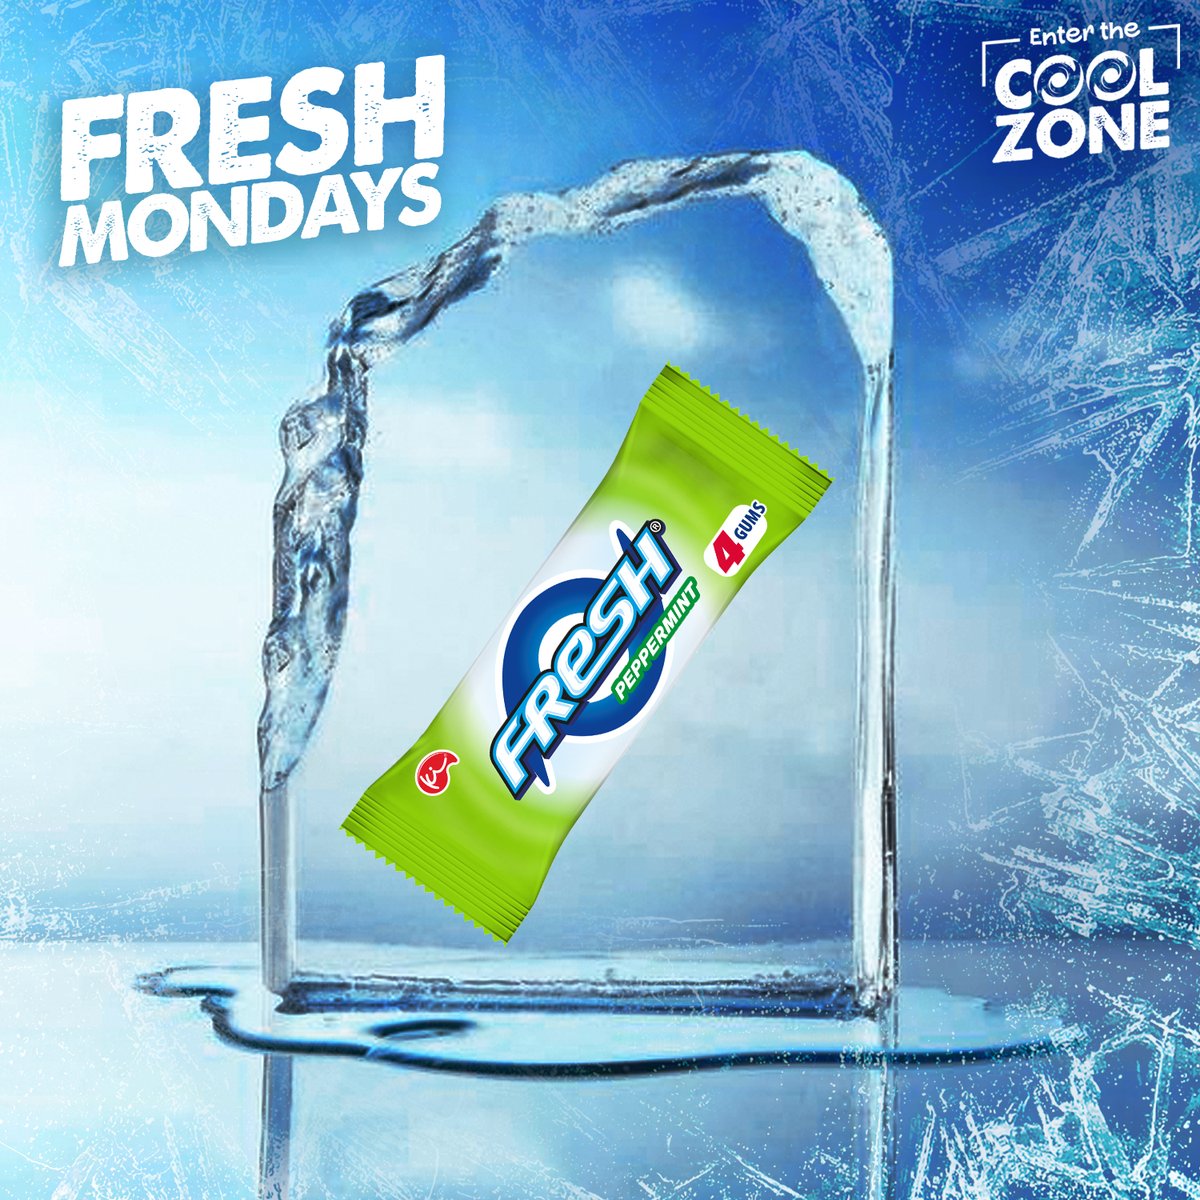 Don’t chew wish every week started Fresh? Don’t worry, we’ve gotcha! #Fresh Mondays #EnterTheCoolZone #FreshChewingGum